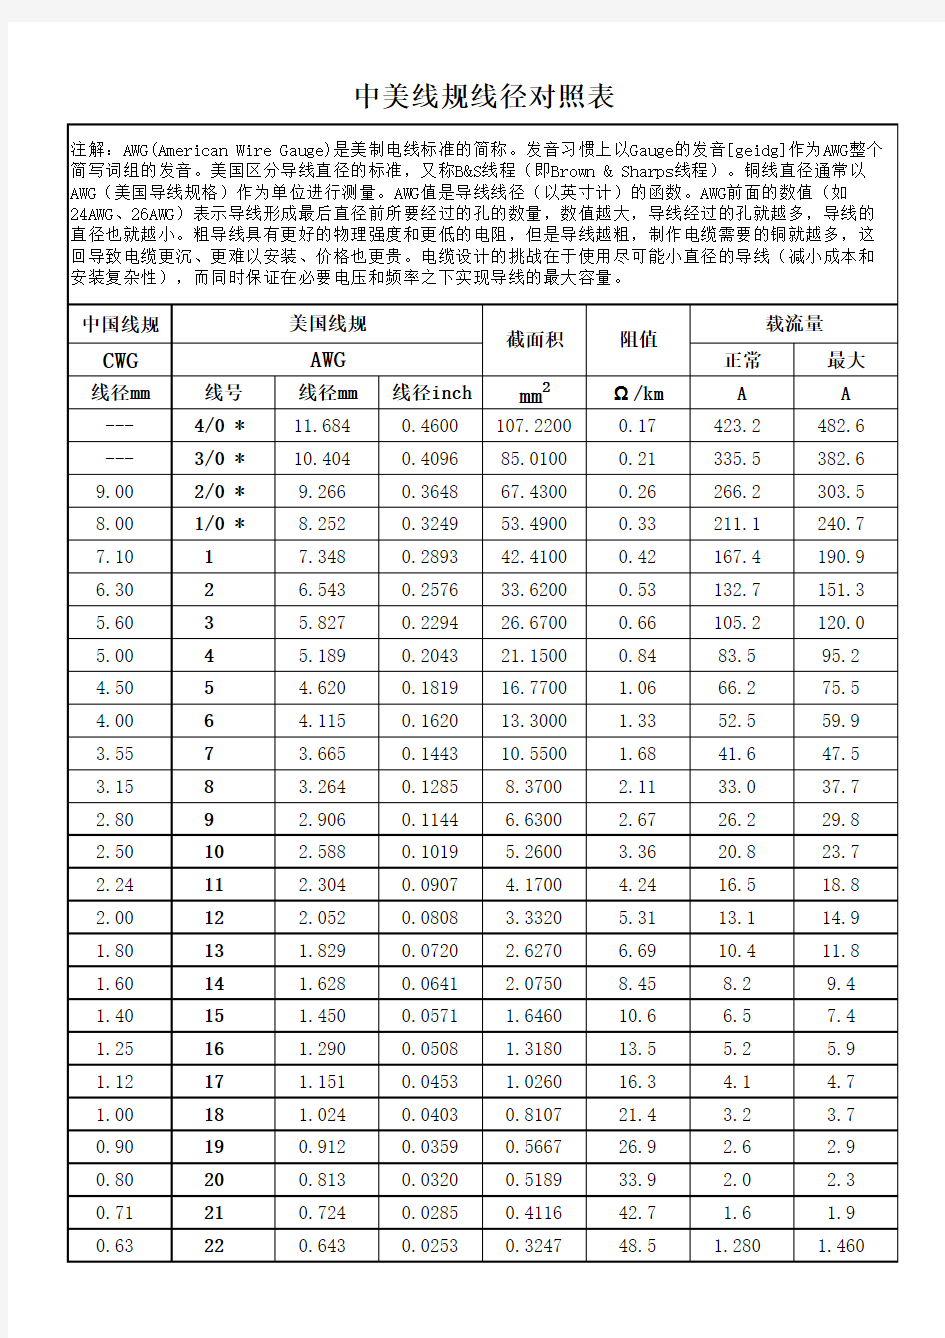 中美WG线规对照表